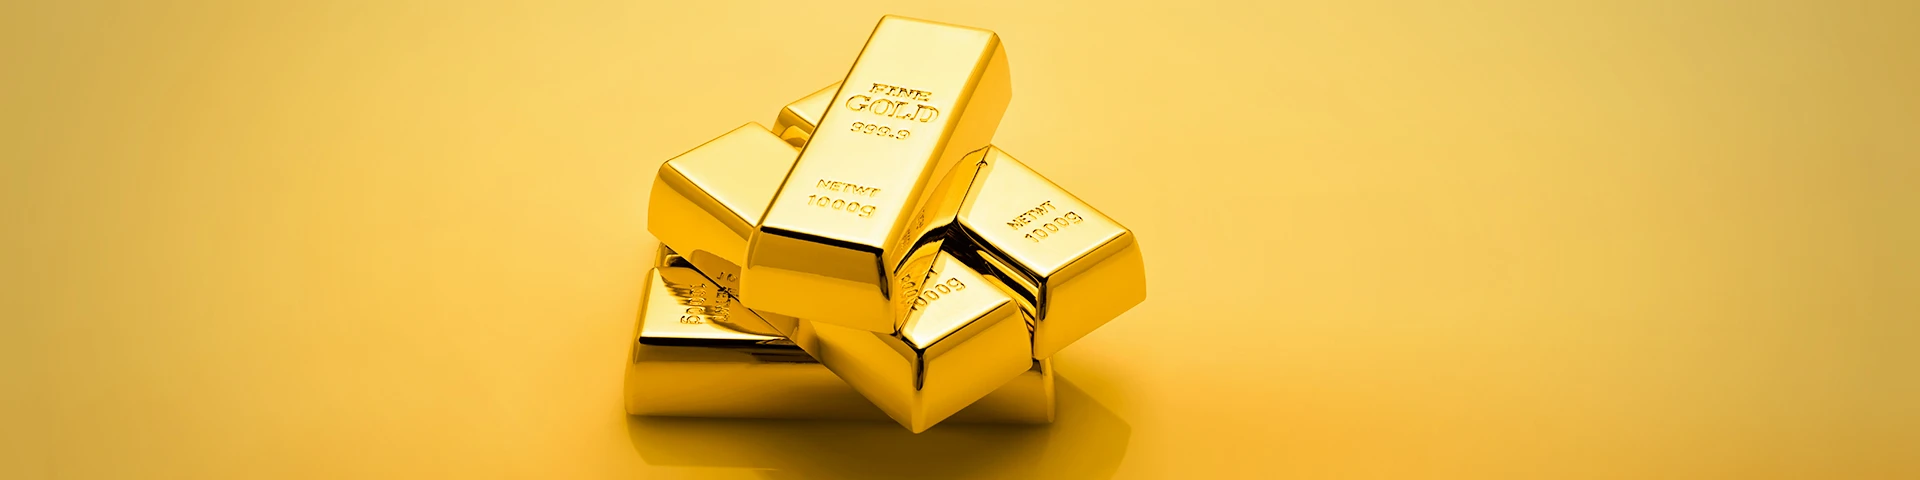 มัดรวมทุกการลงทุนทองคำ หุ้นทองคำ กองทุนทองคำ แบบไหนใช่สำหรับคุณ?